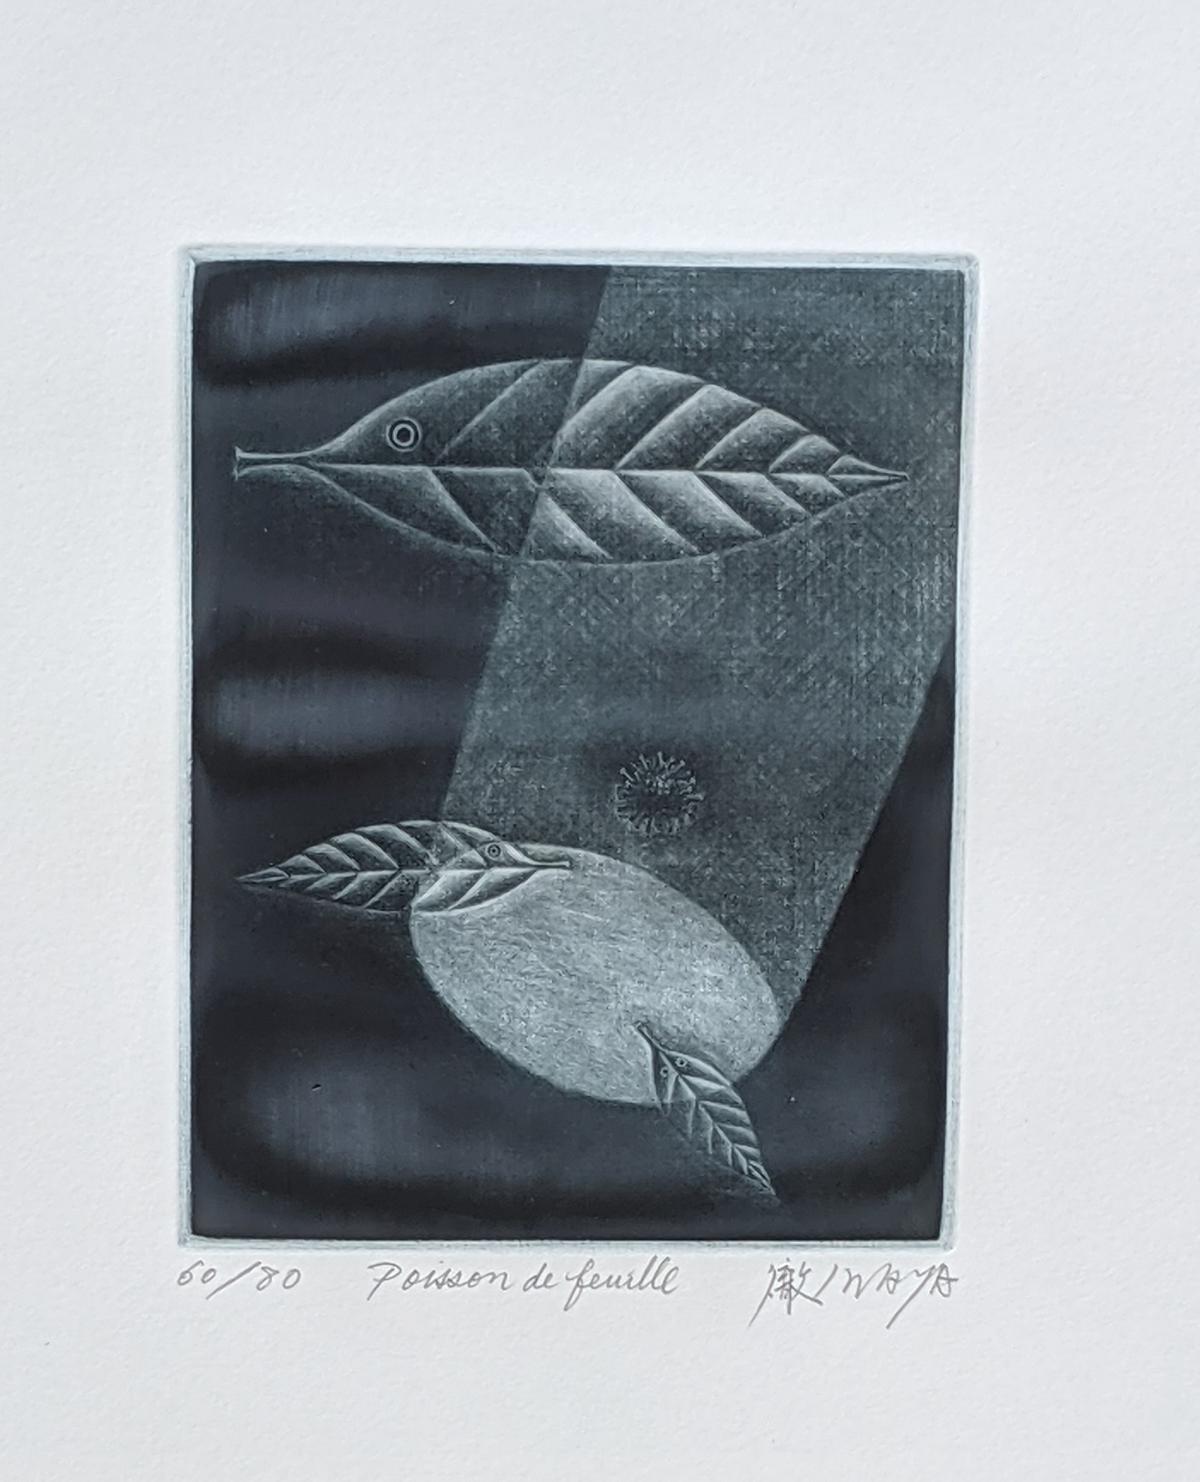 Toru Iwaya (1936). "Poisson de Feuille